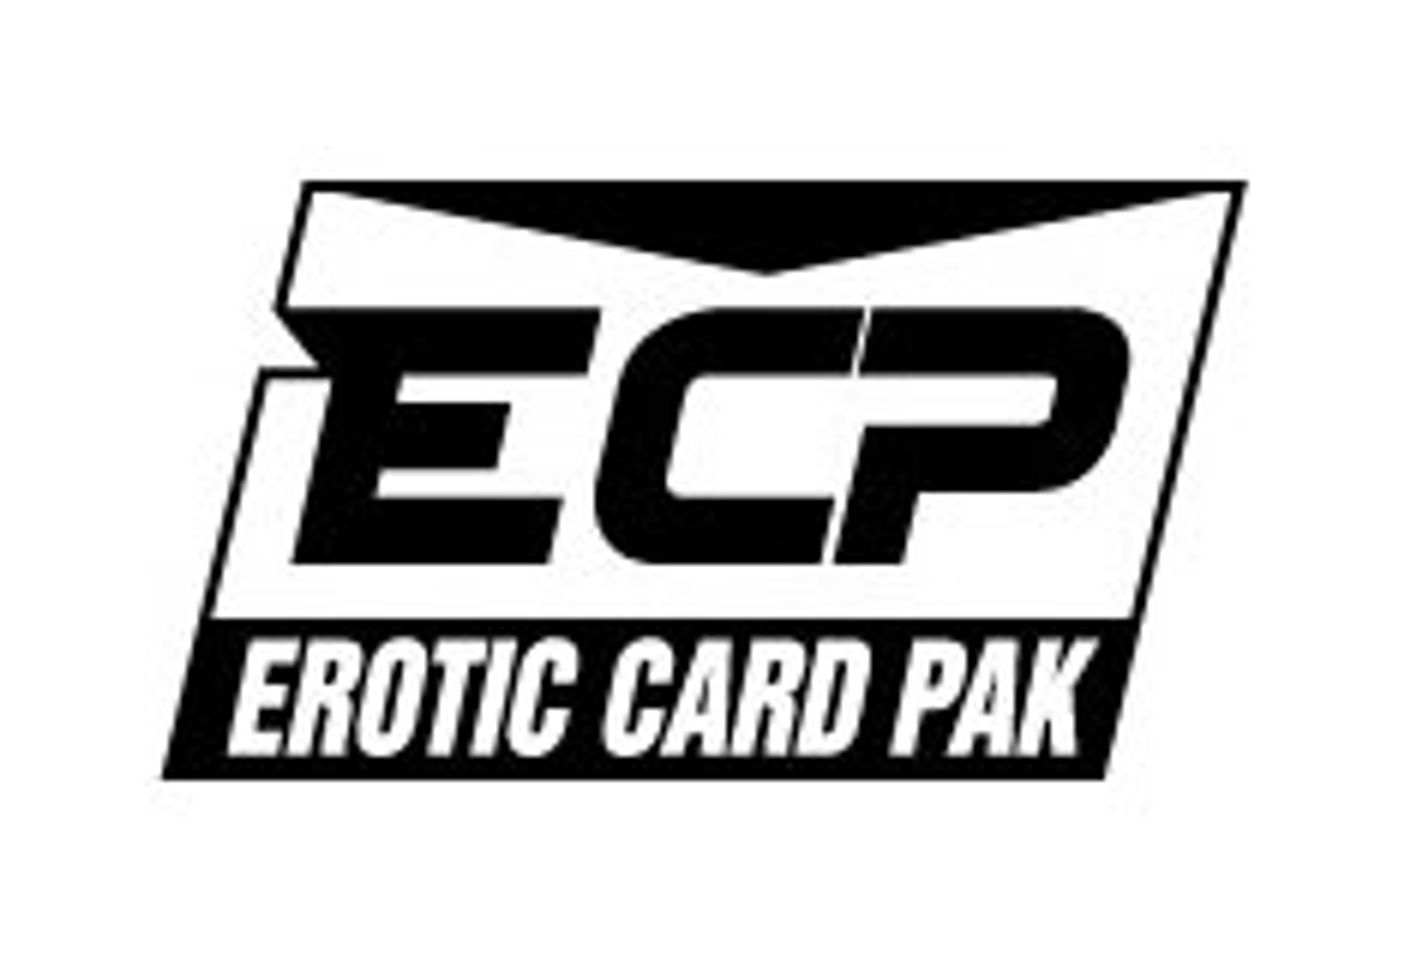 Erotic Card Pack Winter 2003 Edition Still Open